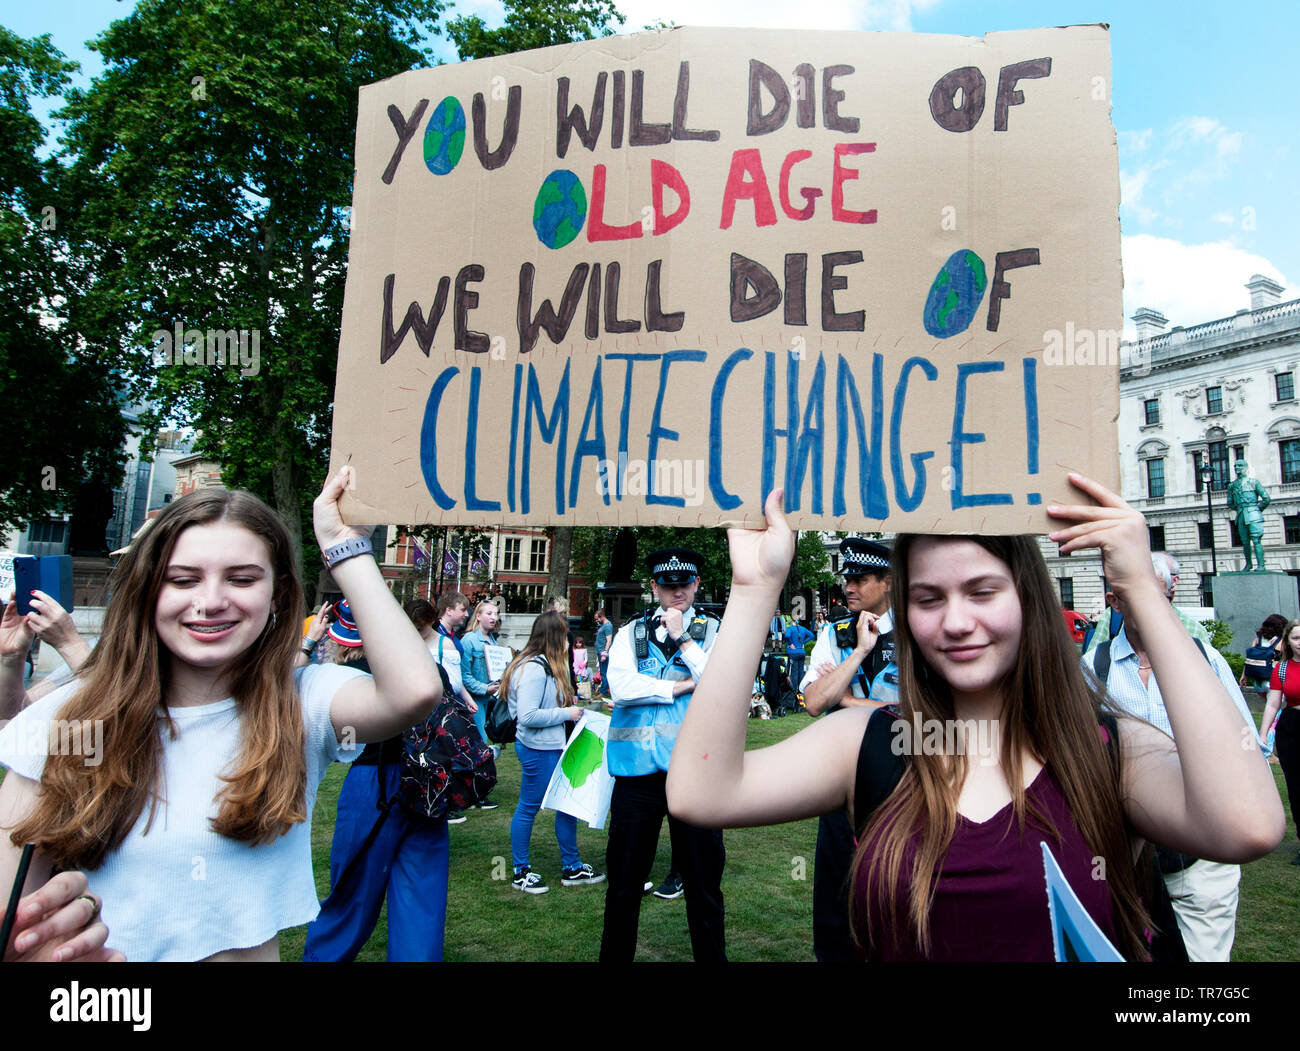 Schule Klima Streik, London, England, UK. Zwei junge Frauen halten ein Schild mit der Aufschrift "Sie Alter sterben, wir sterben des Klimawandels". Stockfoto